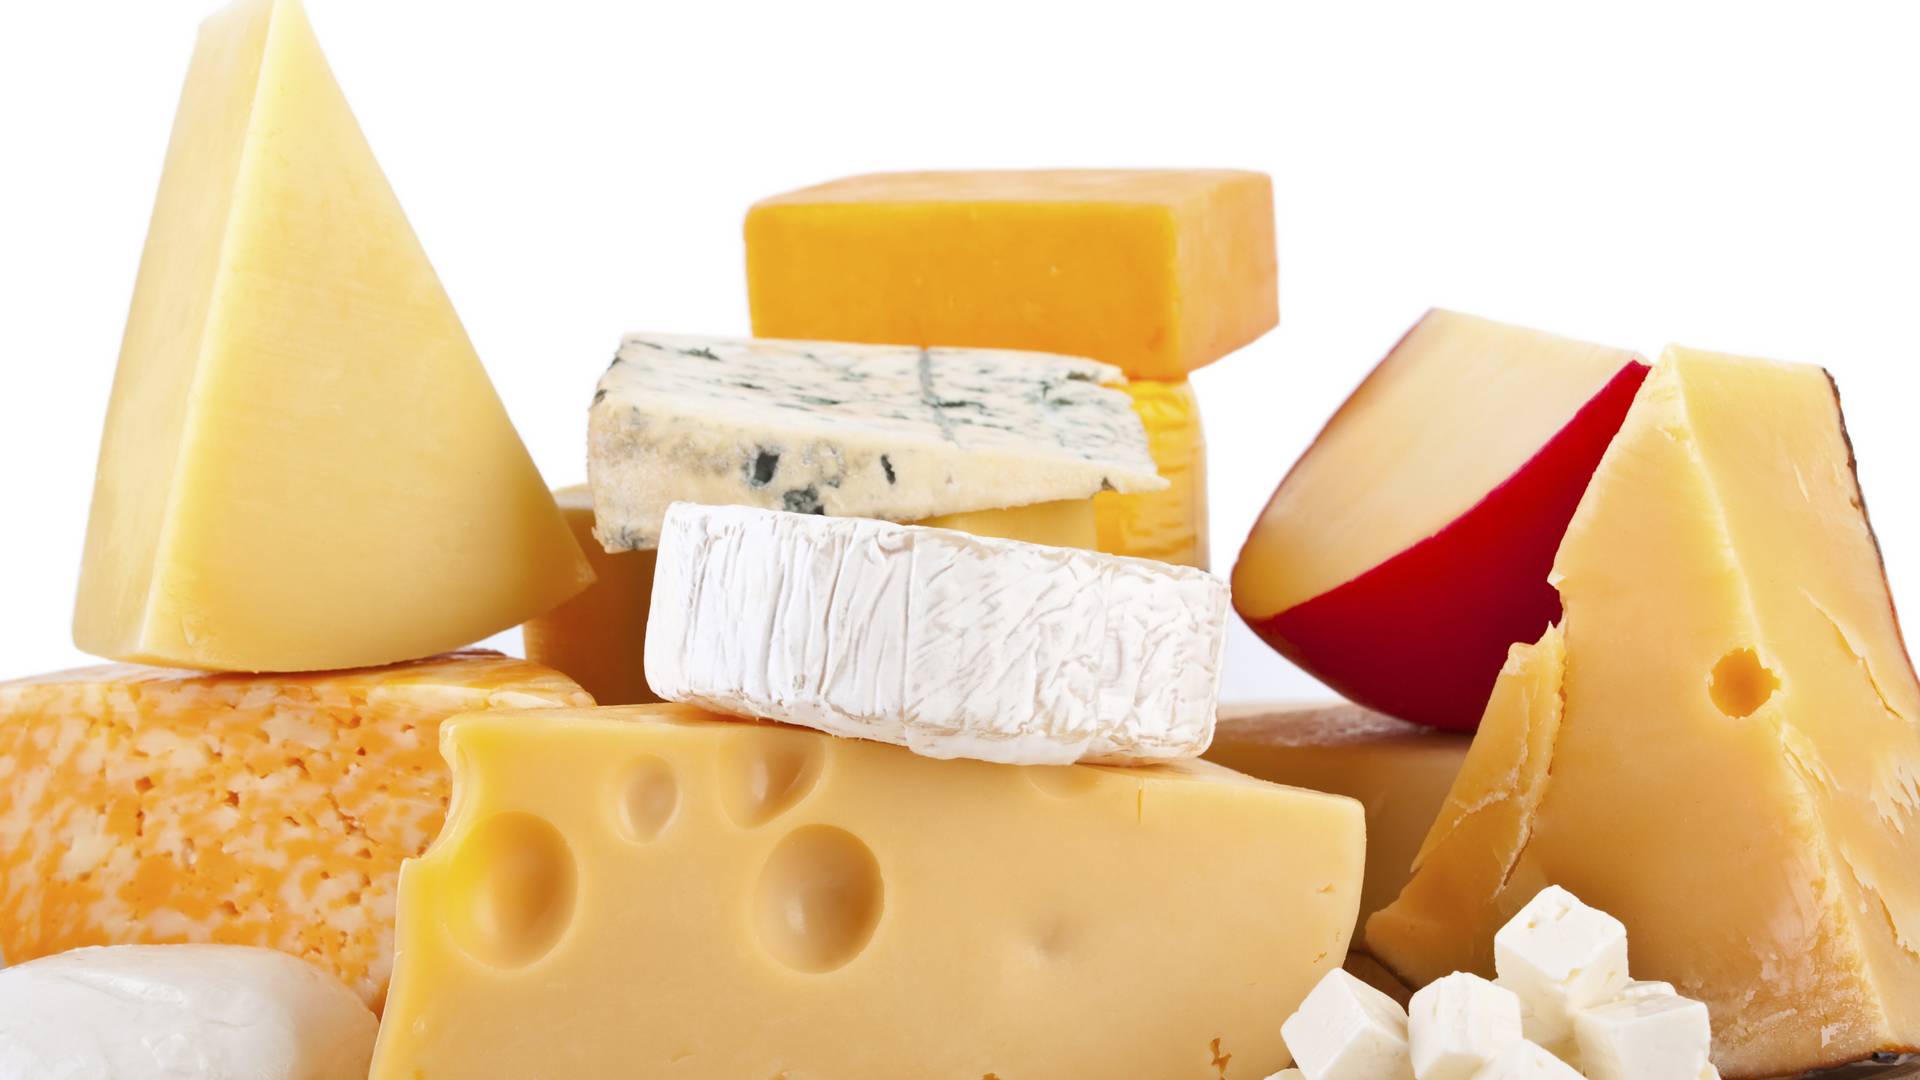 Hasmenést okozó sajtot hívnak vissza a Lidl üzleteiből